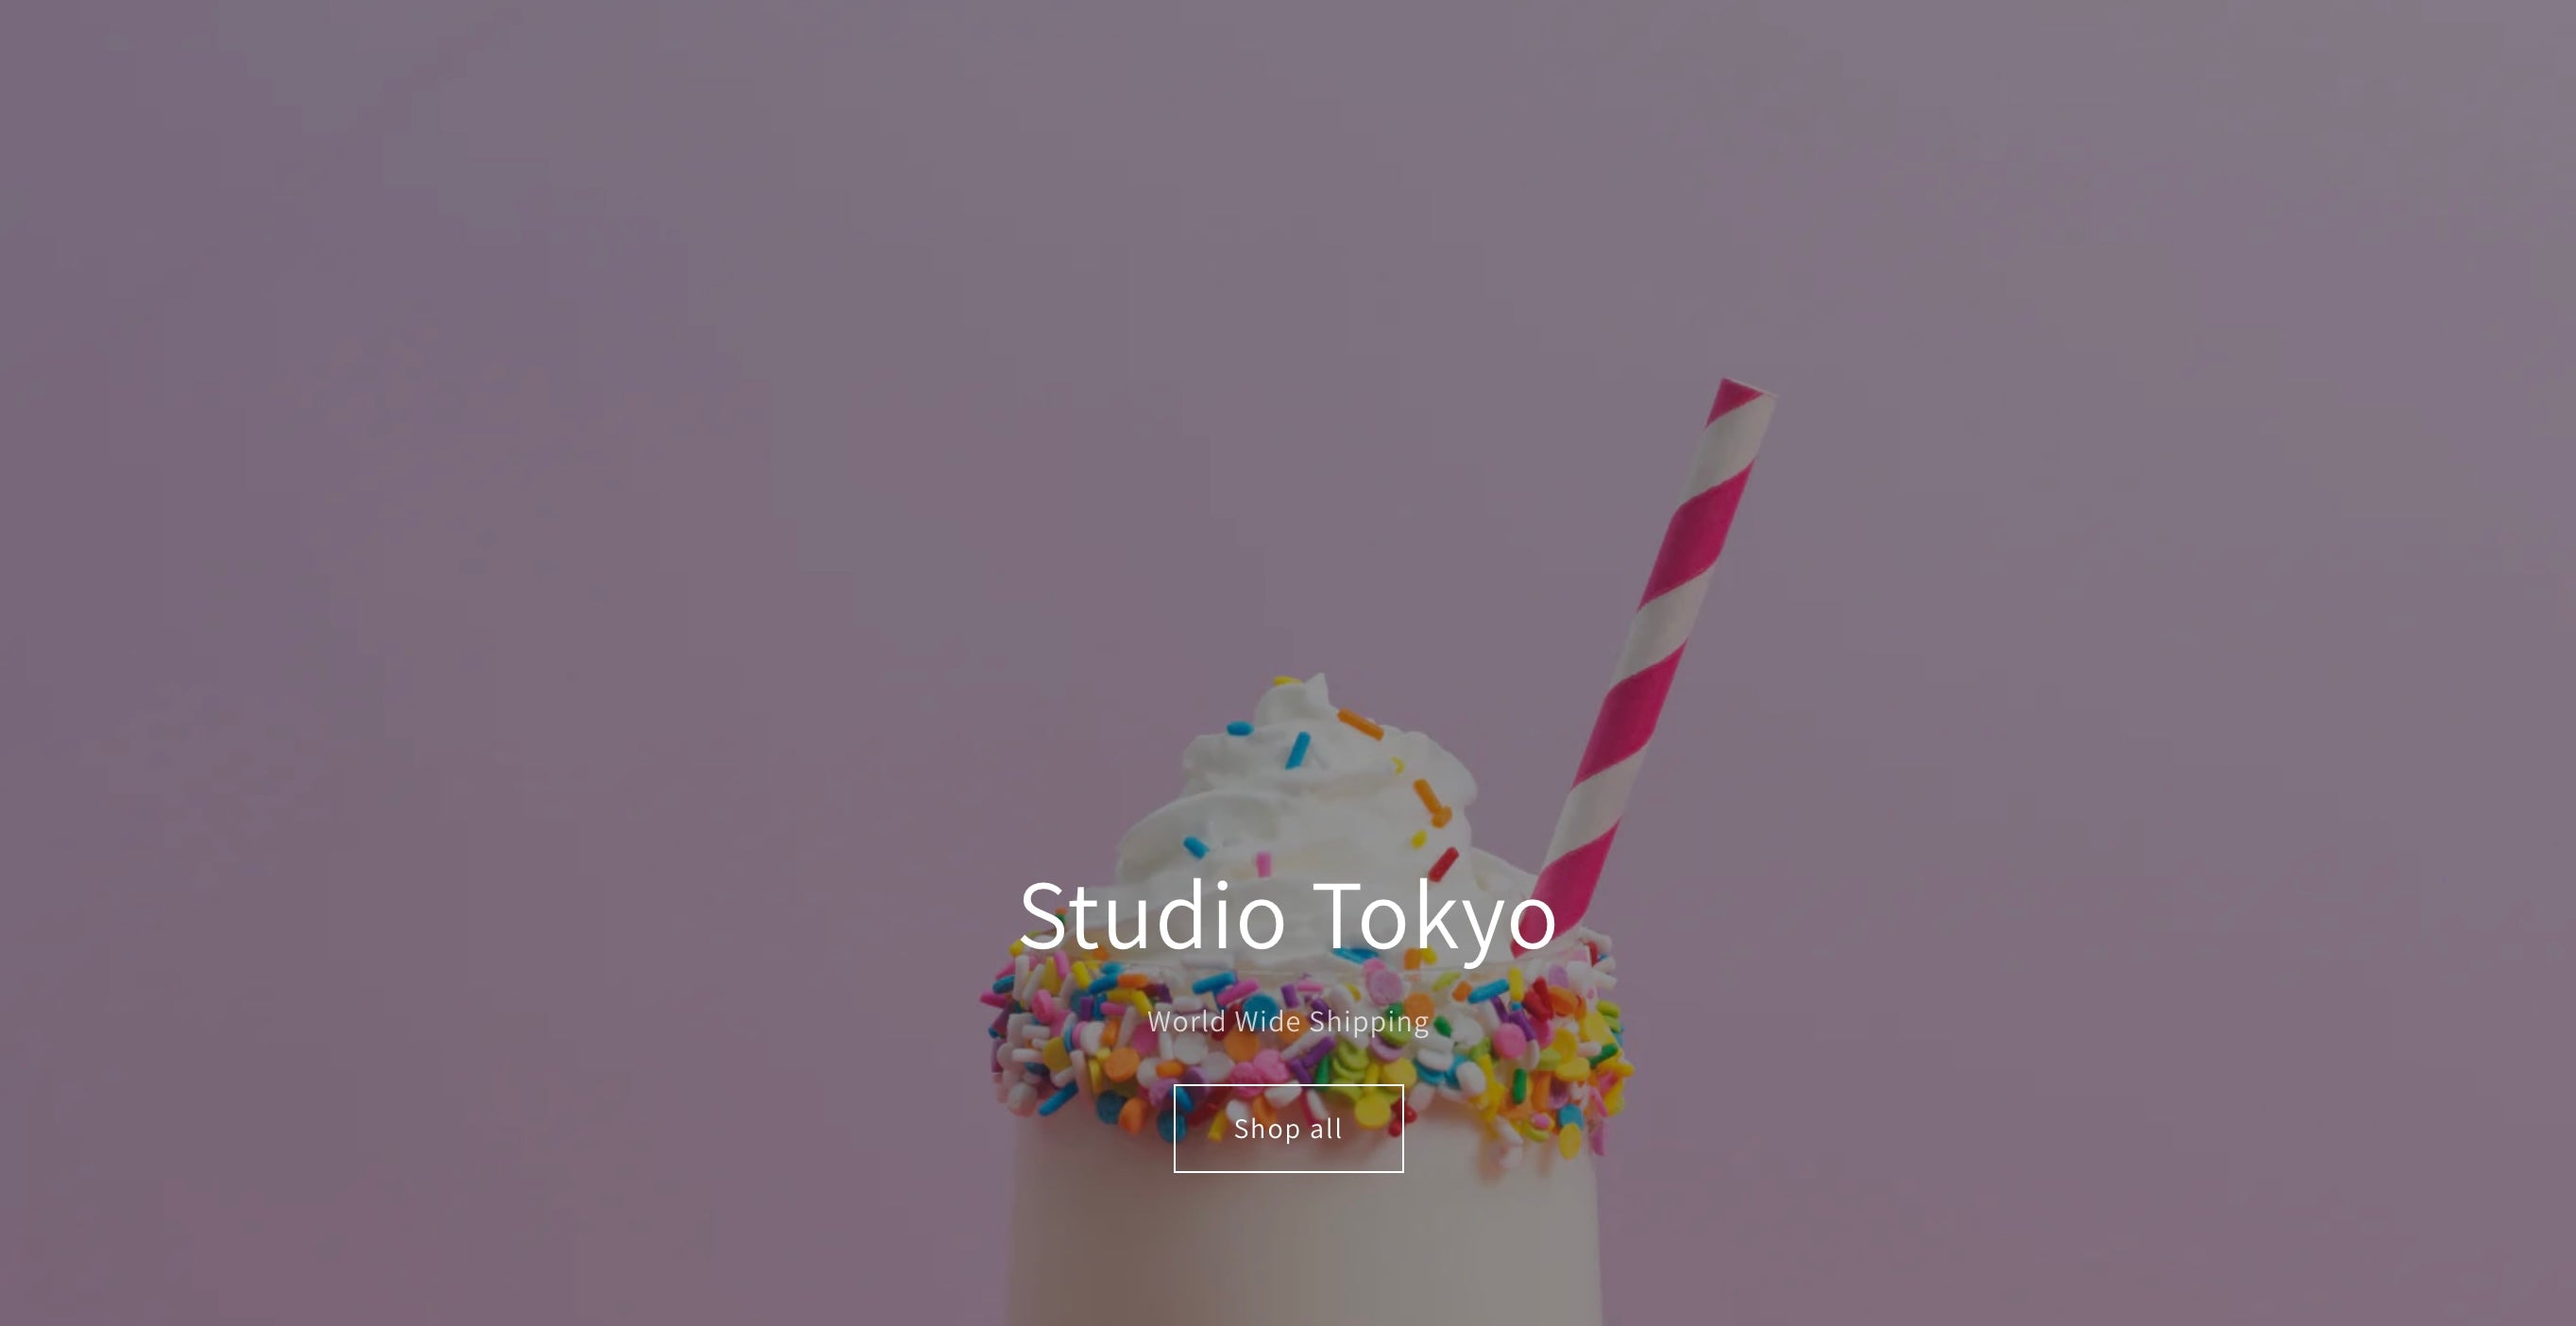 Studio Tokyo